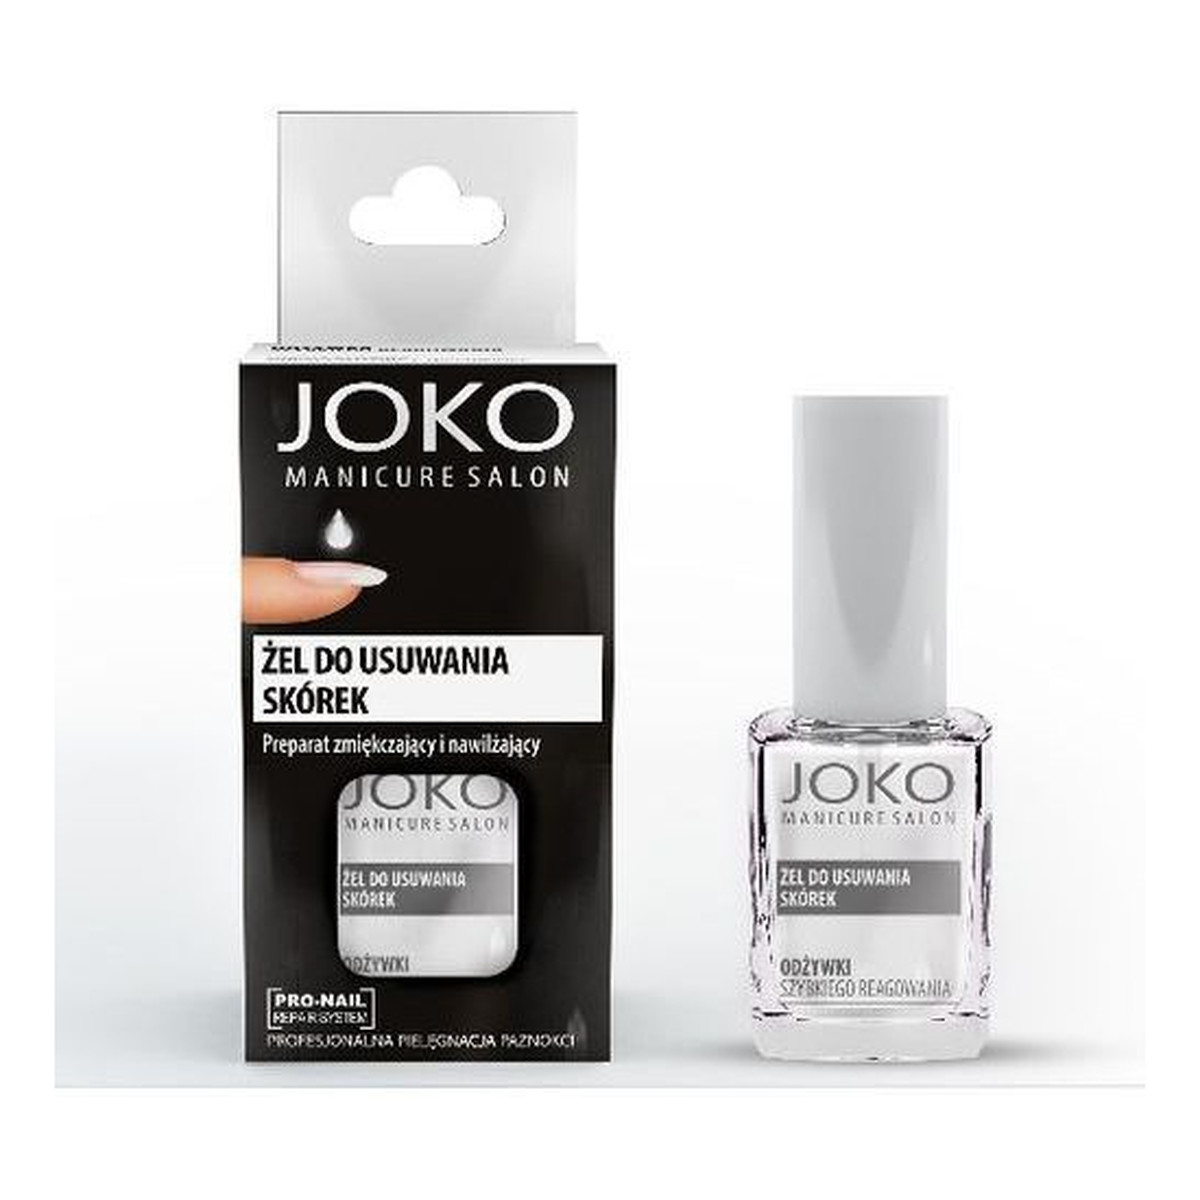 Joko Manicure Salon Żel do usuwania skórek 10ml